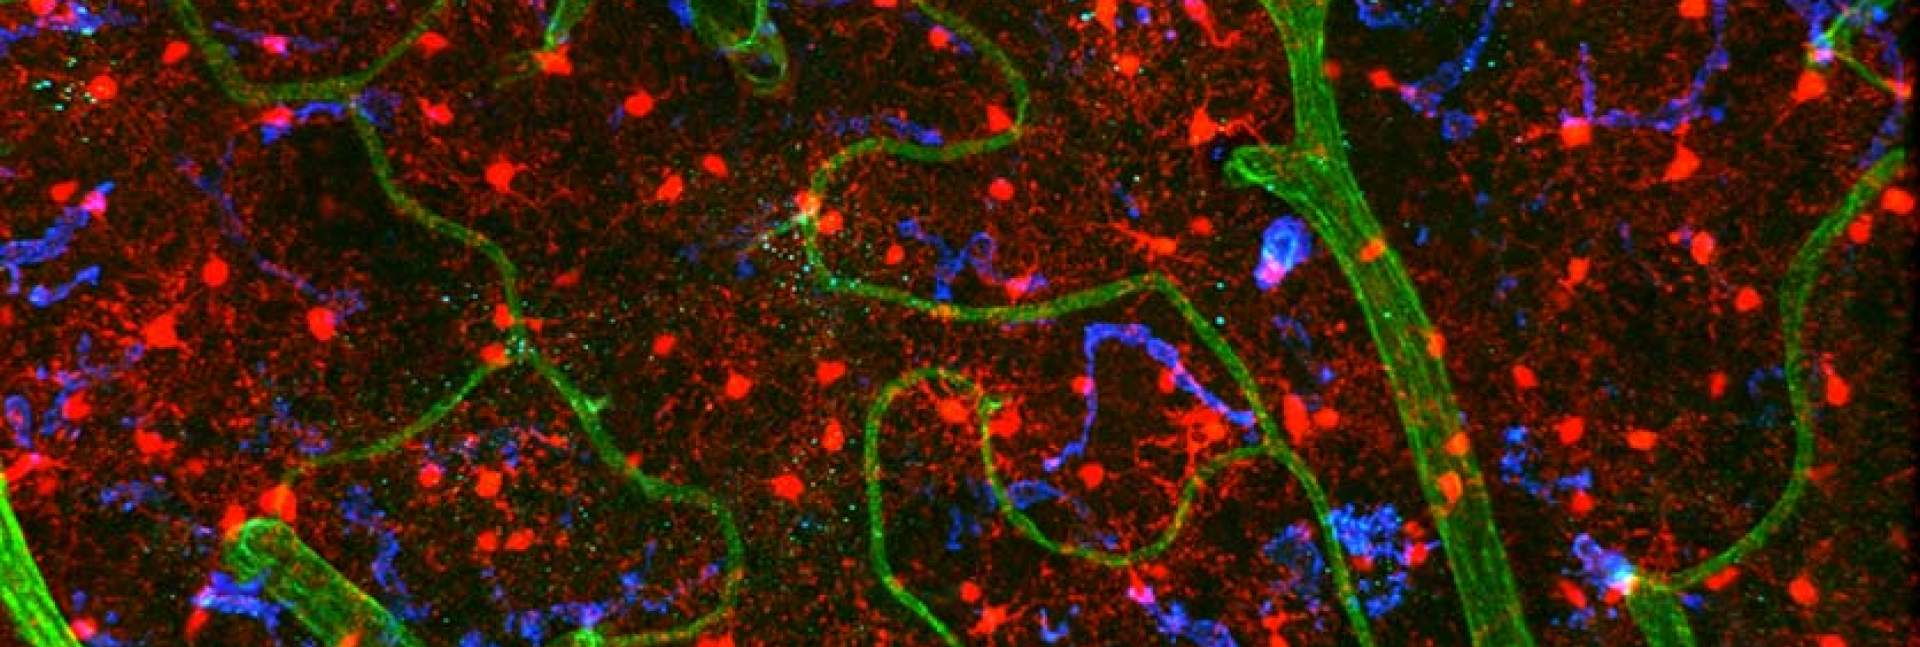 רקמת מוח של עכבר. תאי המיקרוגליה דמויי התמנון מסומנים באדום. בירוק – כלי הדם